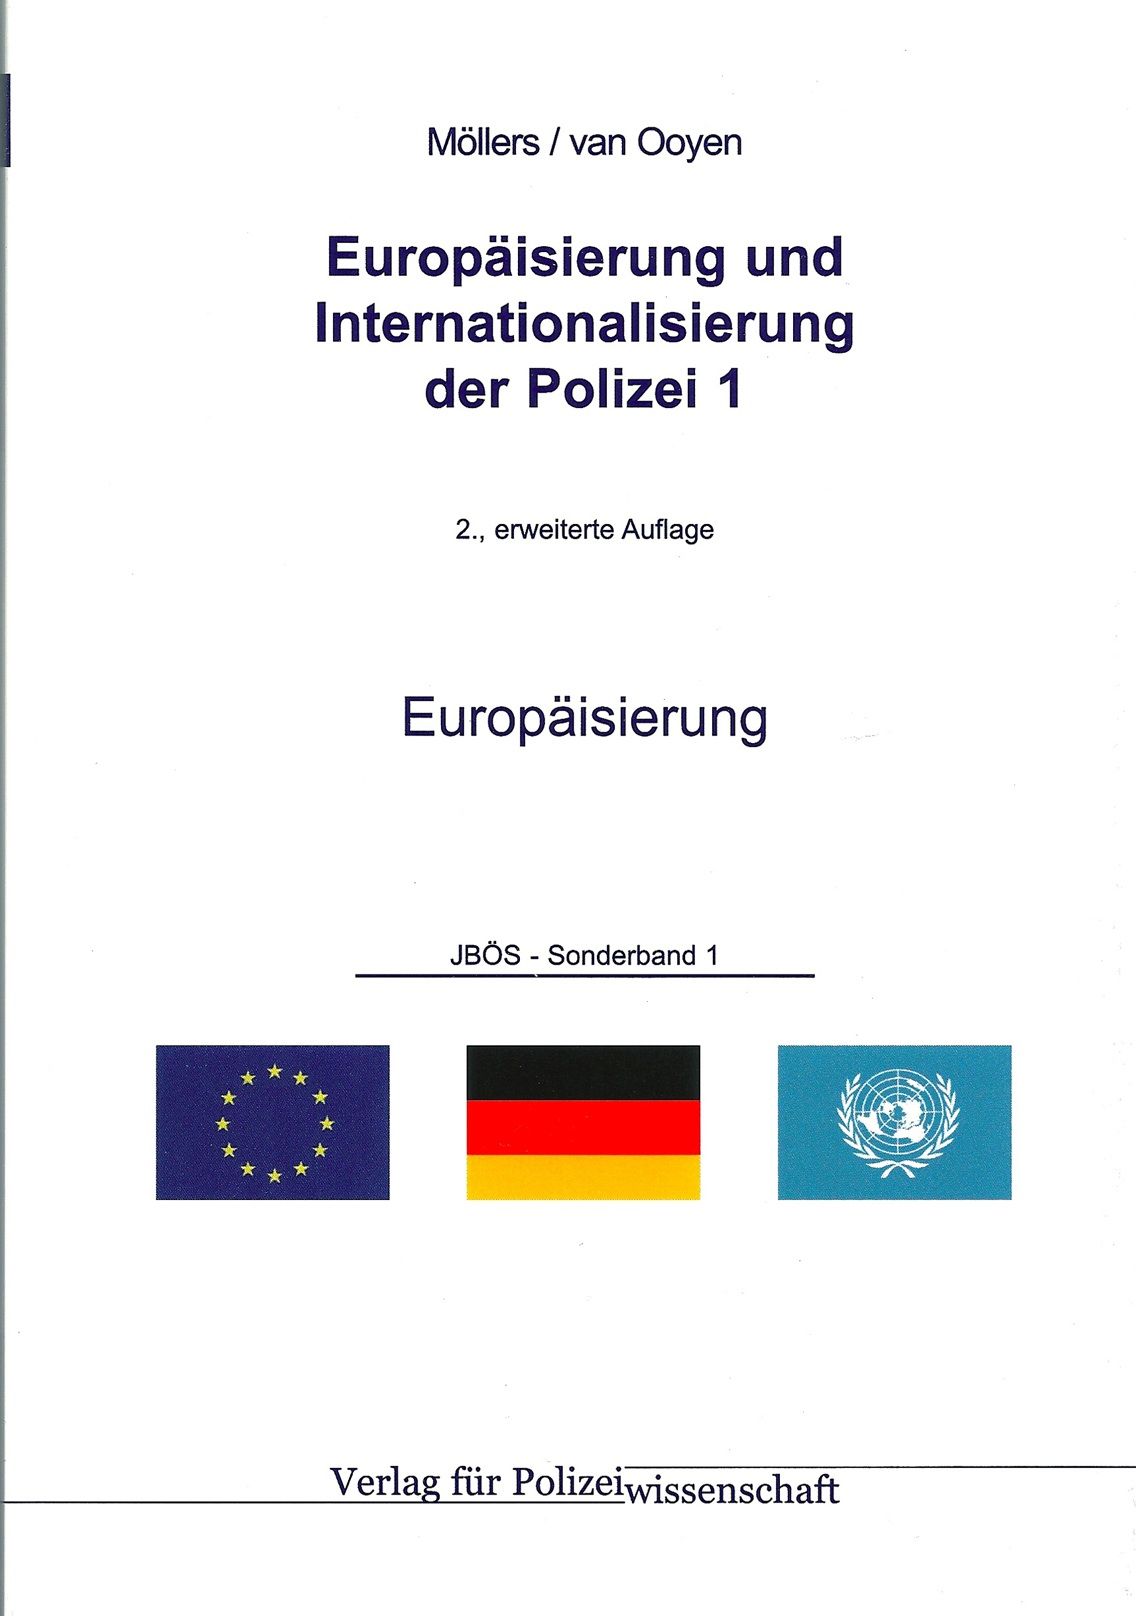 Europäisierung und Internationalisierung der Polizei 1: Europäisierung - JBÖS-Sonderband 1.1